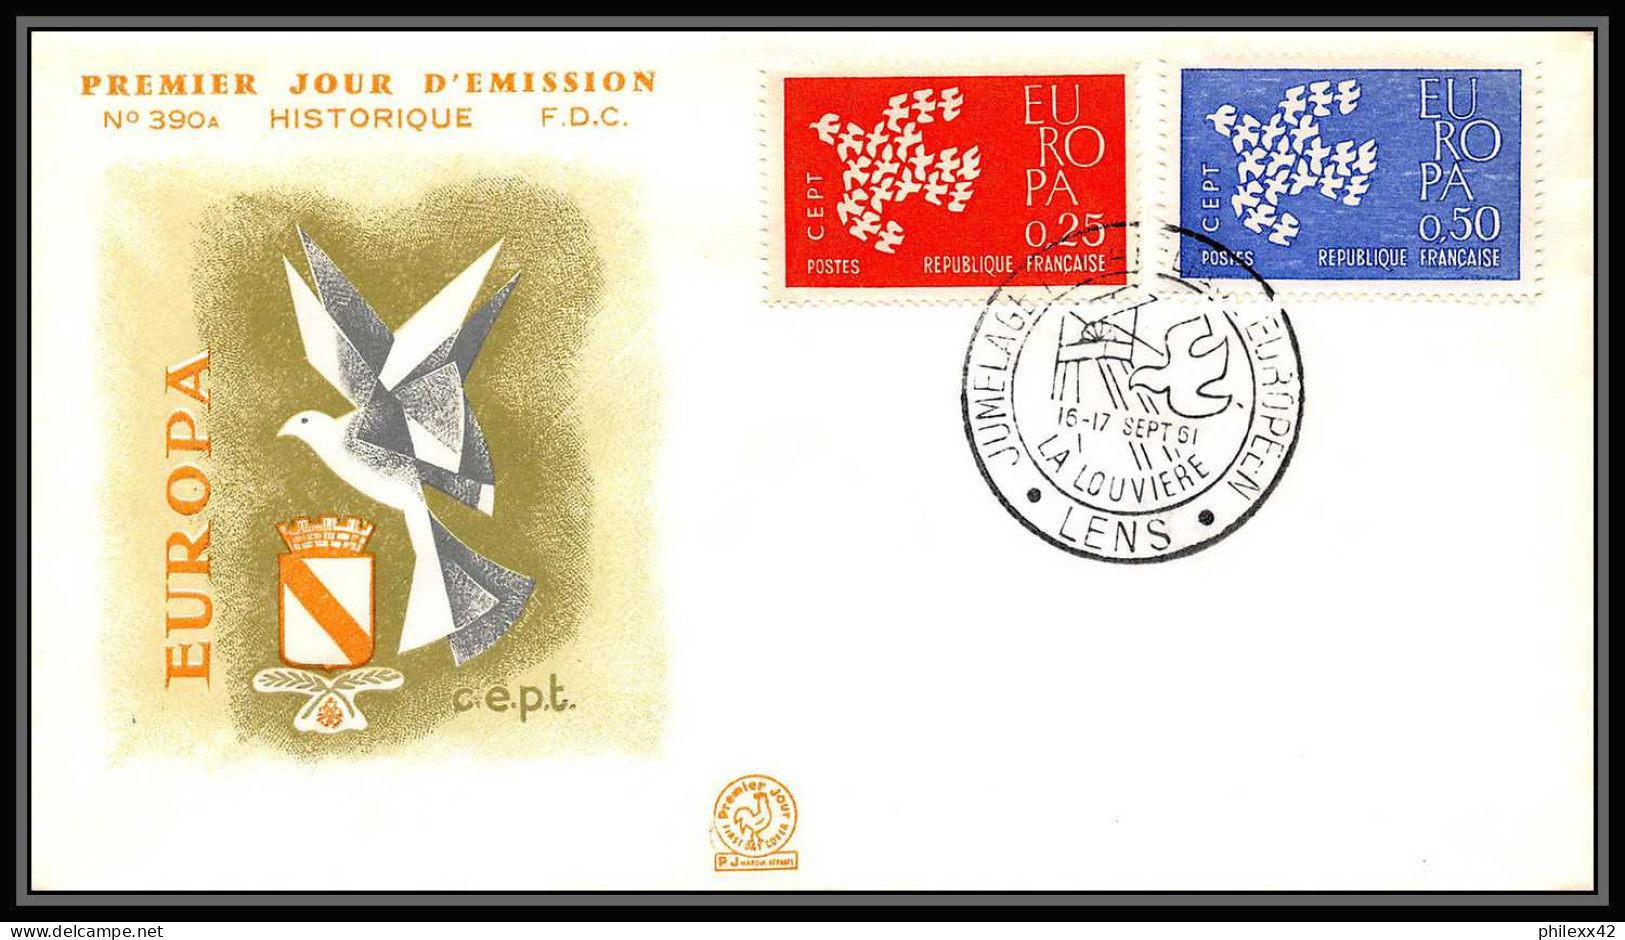 004 FRANCE Lettre (cover briefe) fdc (premier jour) Europe Europa 1956 - 1970 lot de 32 enveloppes différentes 